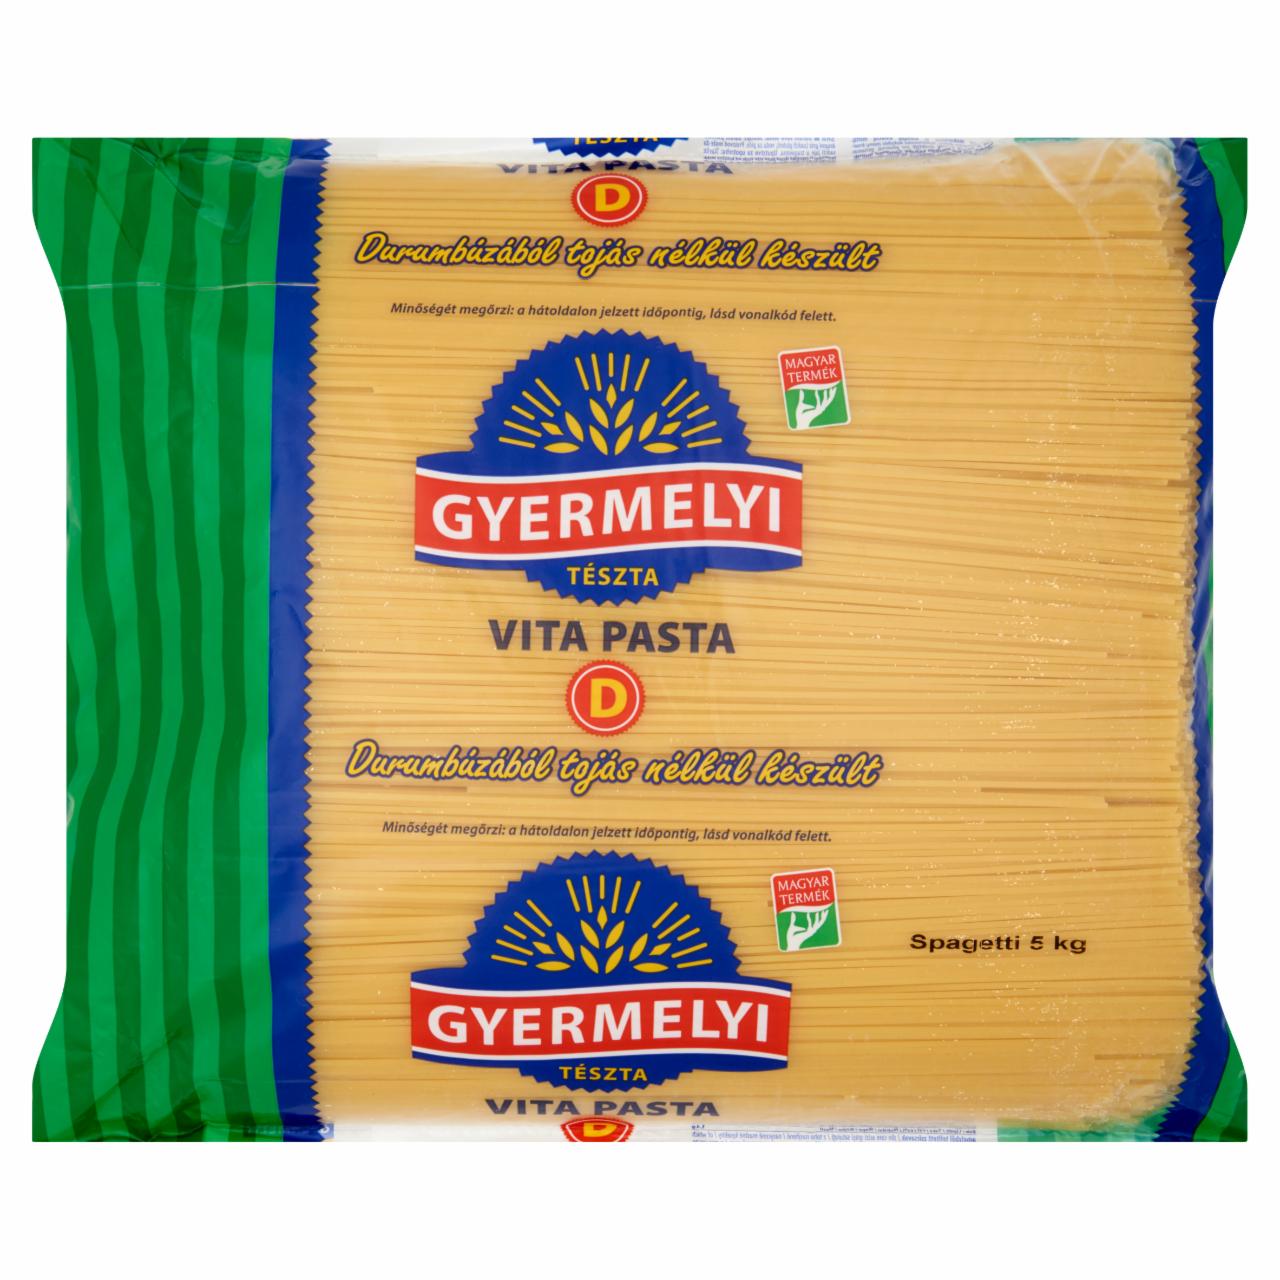 Képek - Gyermelyi Vita Pasta ömlesztett spagetti durum száraztészta 2 x 5 kg